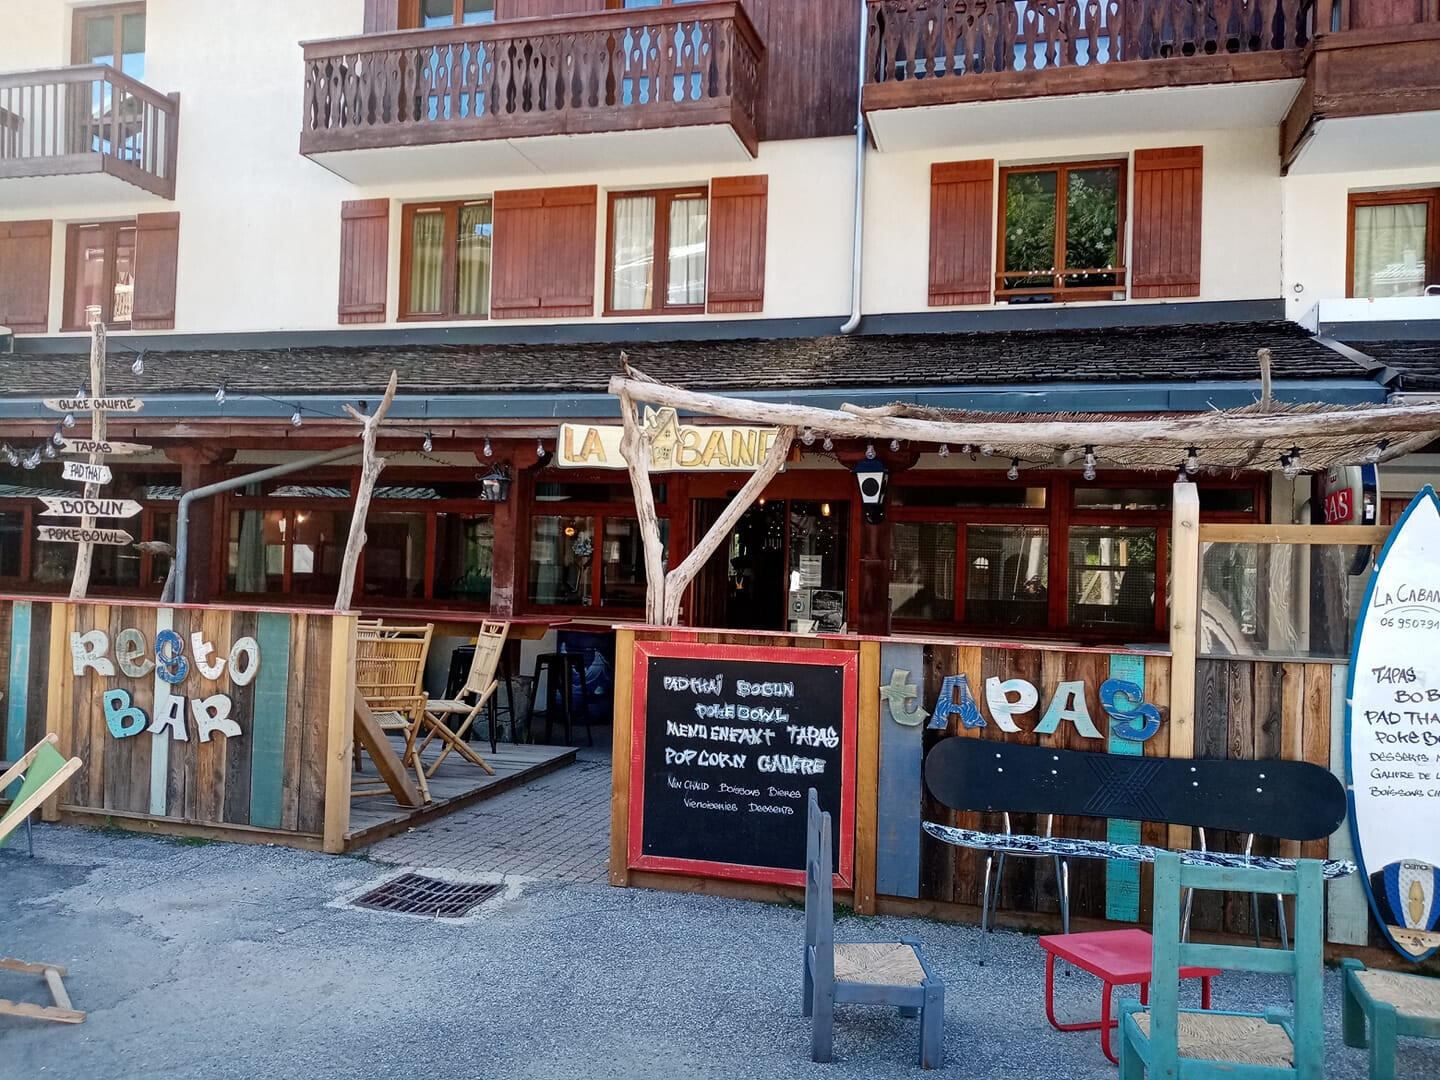 A vendre restaurant en station hiver/été en Savoie